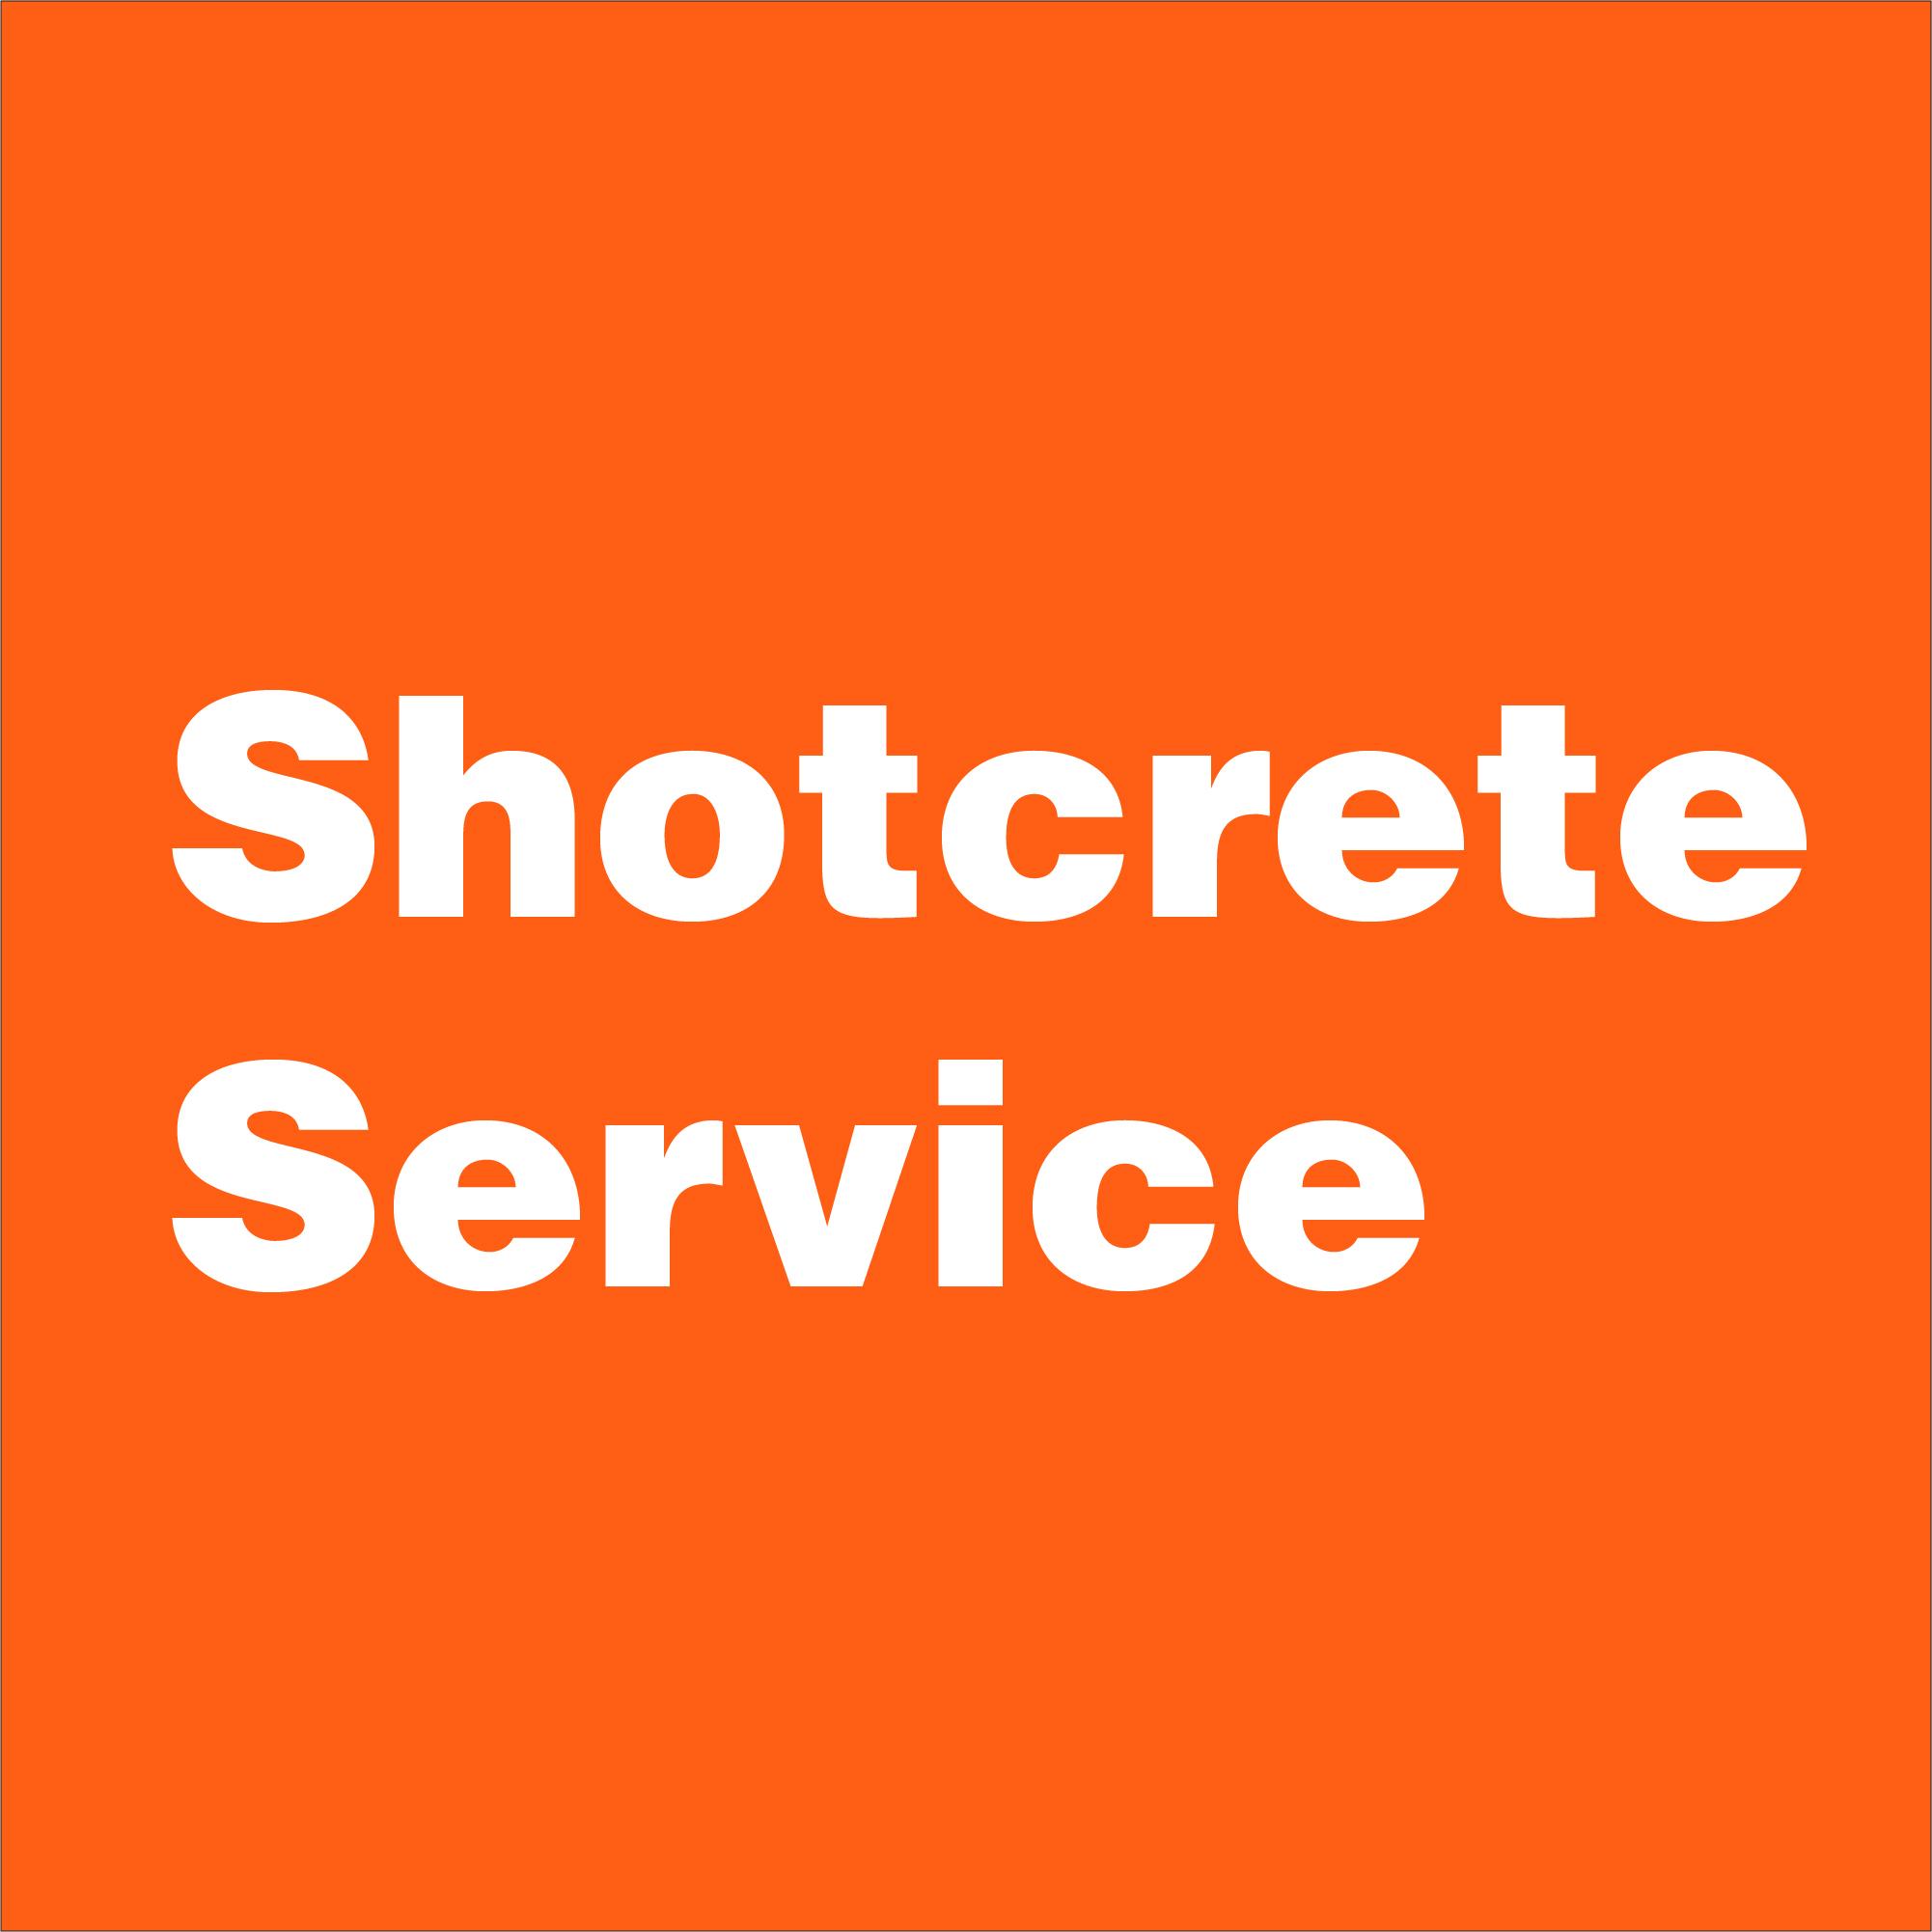 Shotcrete2 image